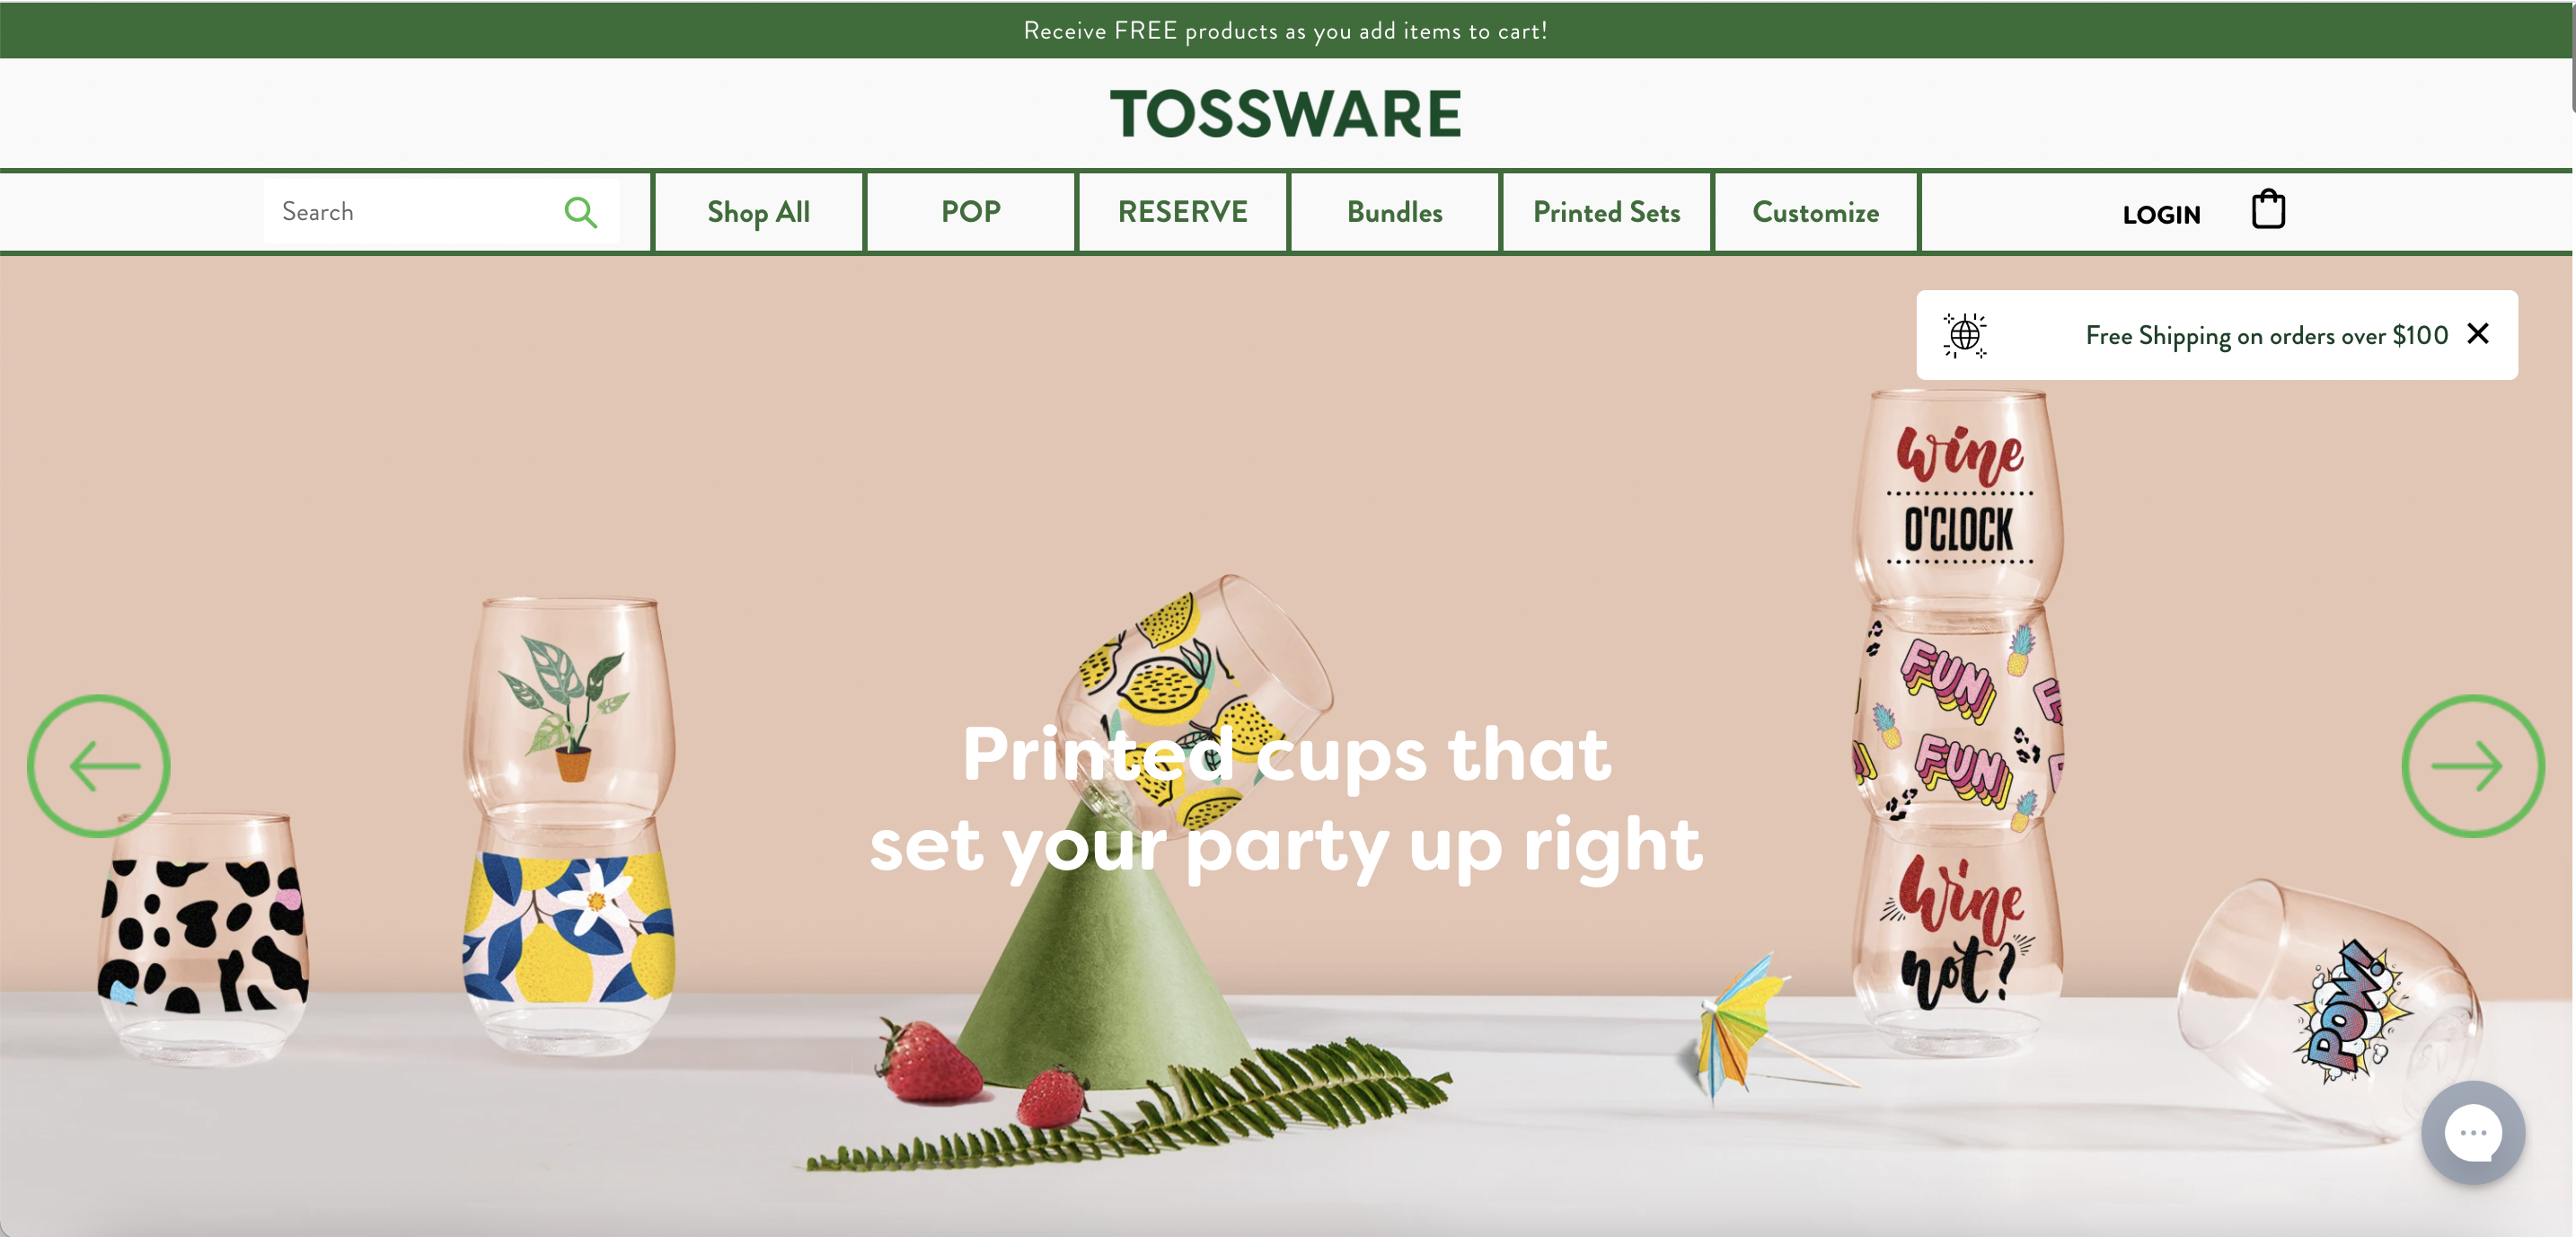 Screenshot from Tossware's website